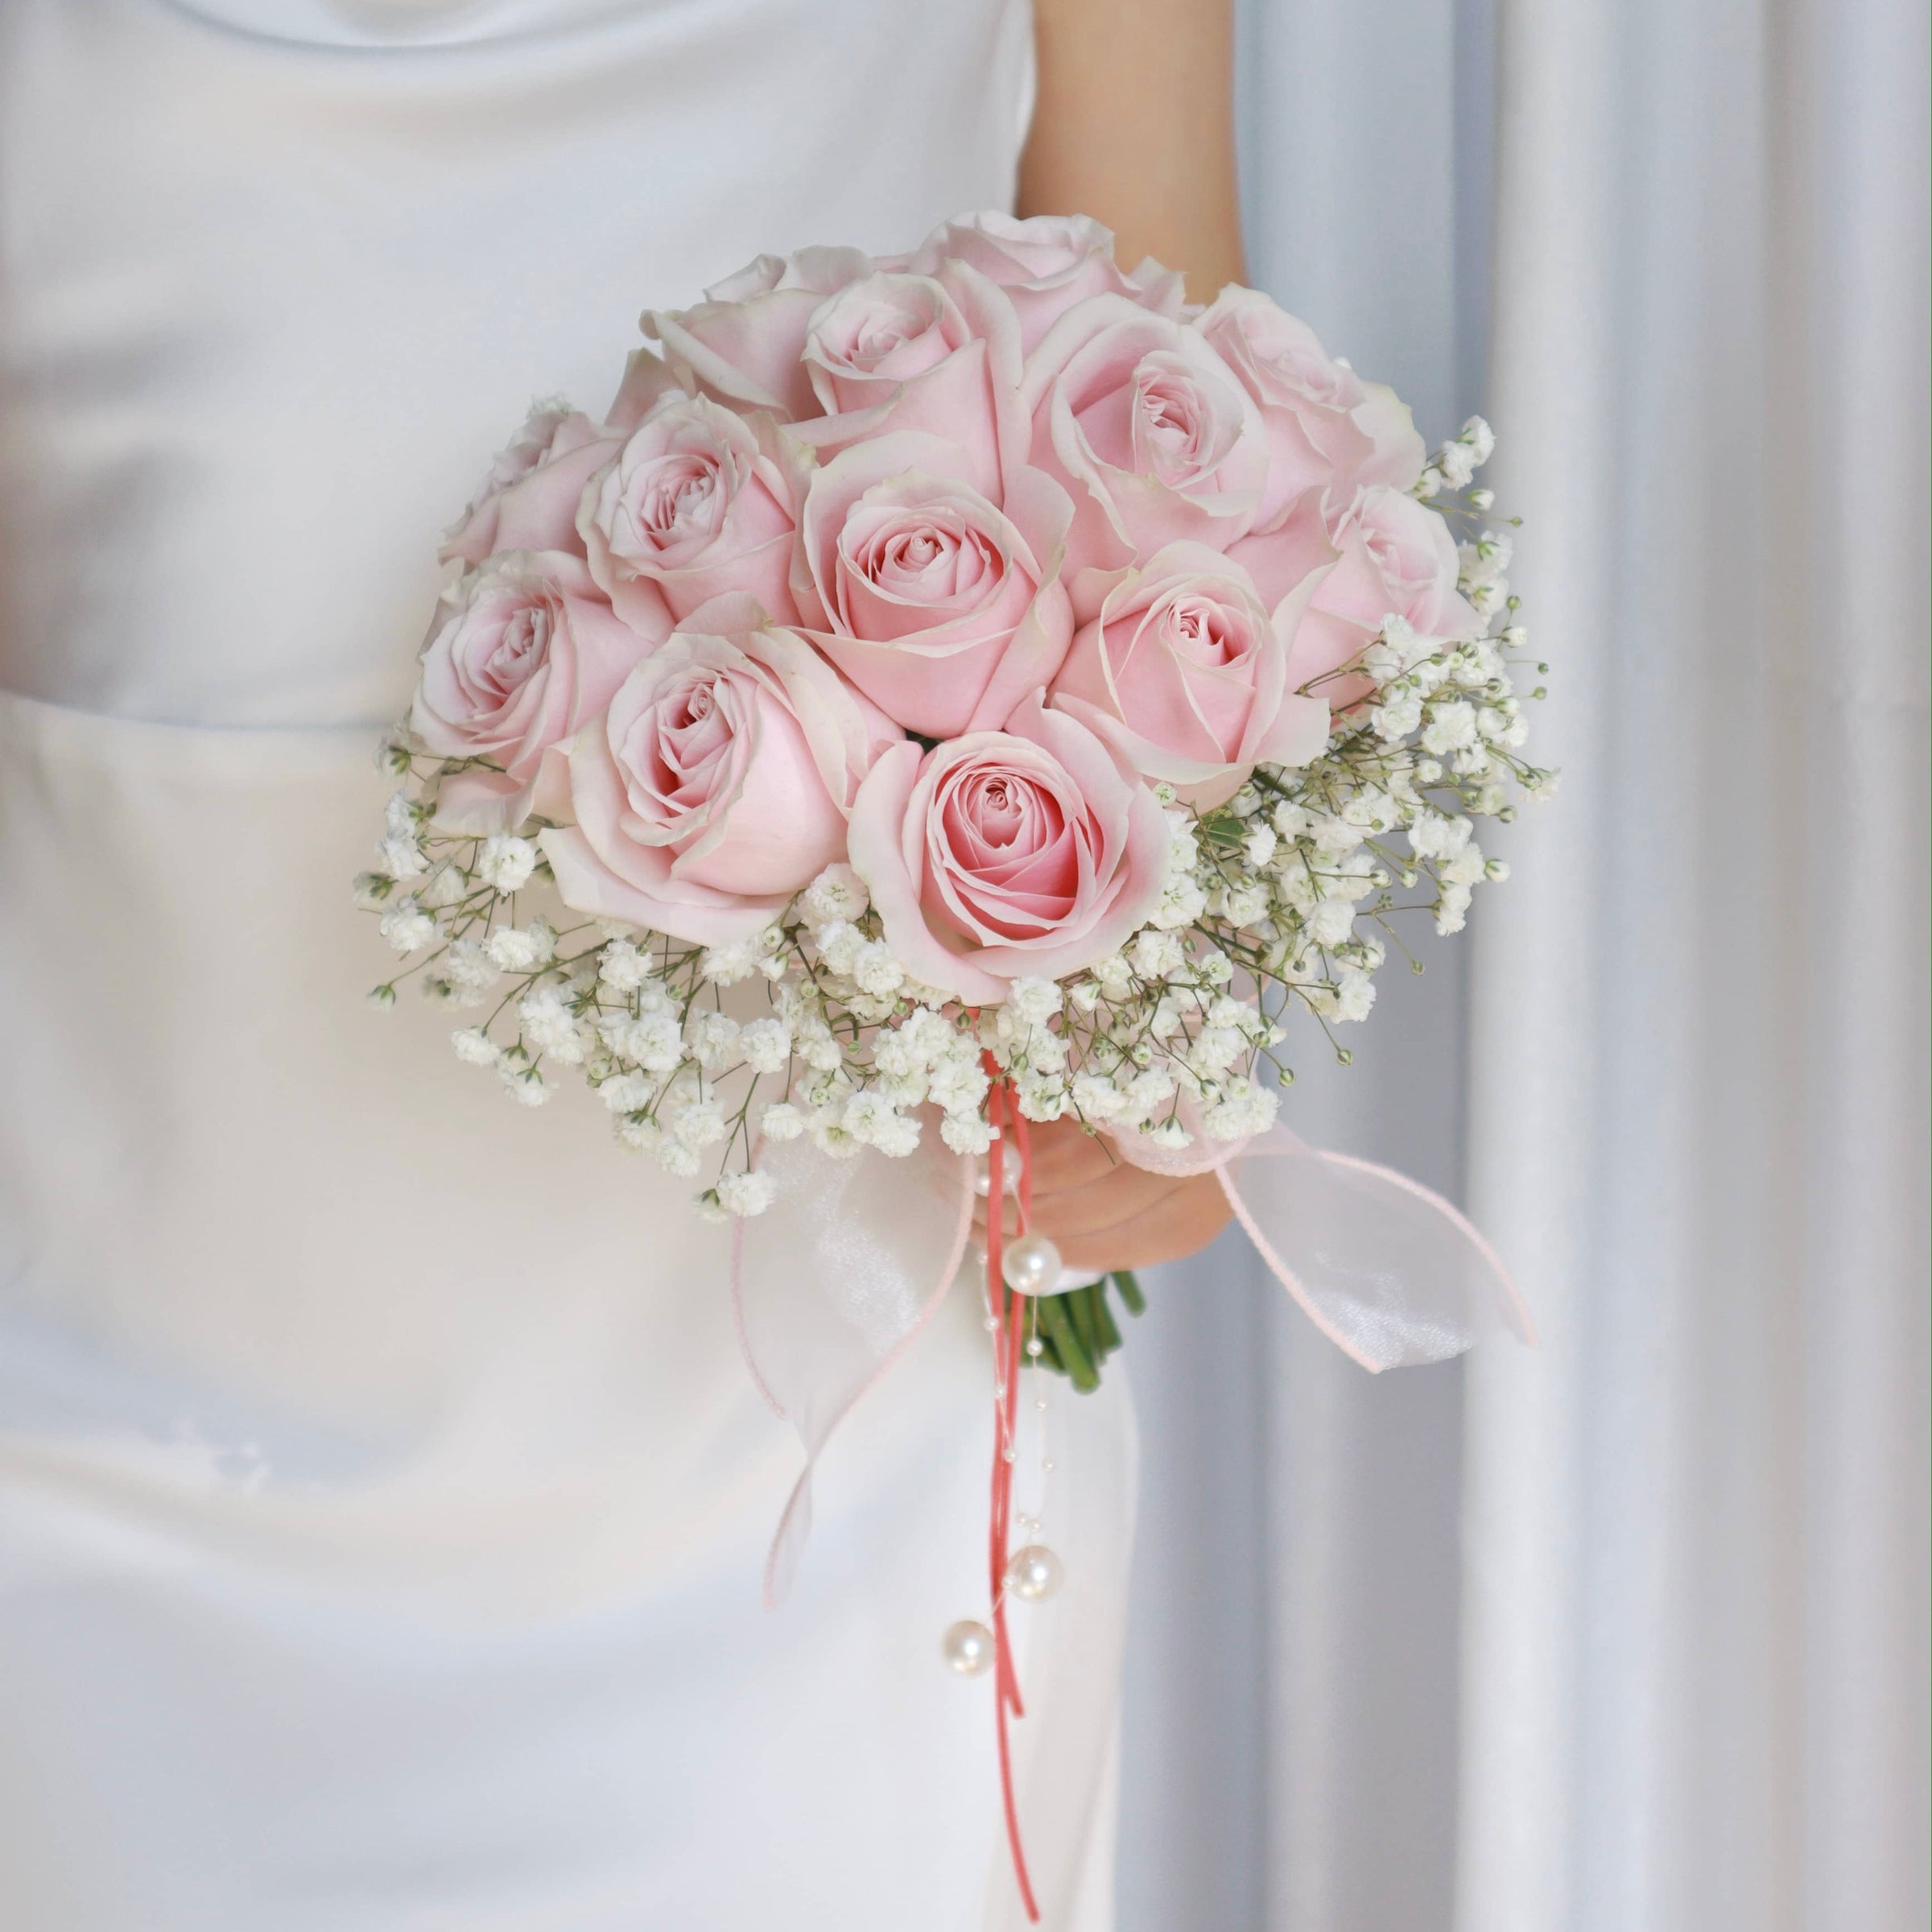 Blush Pink + Babies Breath Wedding Bouquet | Bridal Bouquet (large)